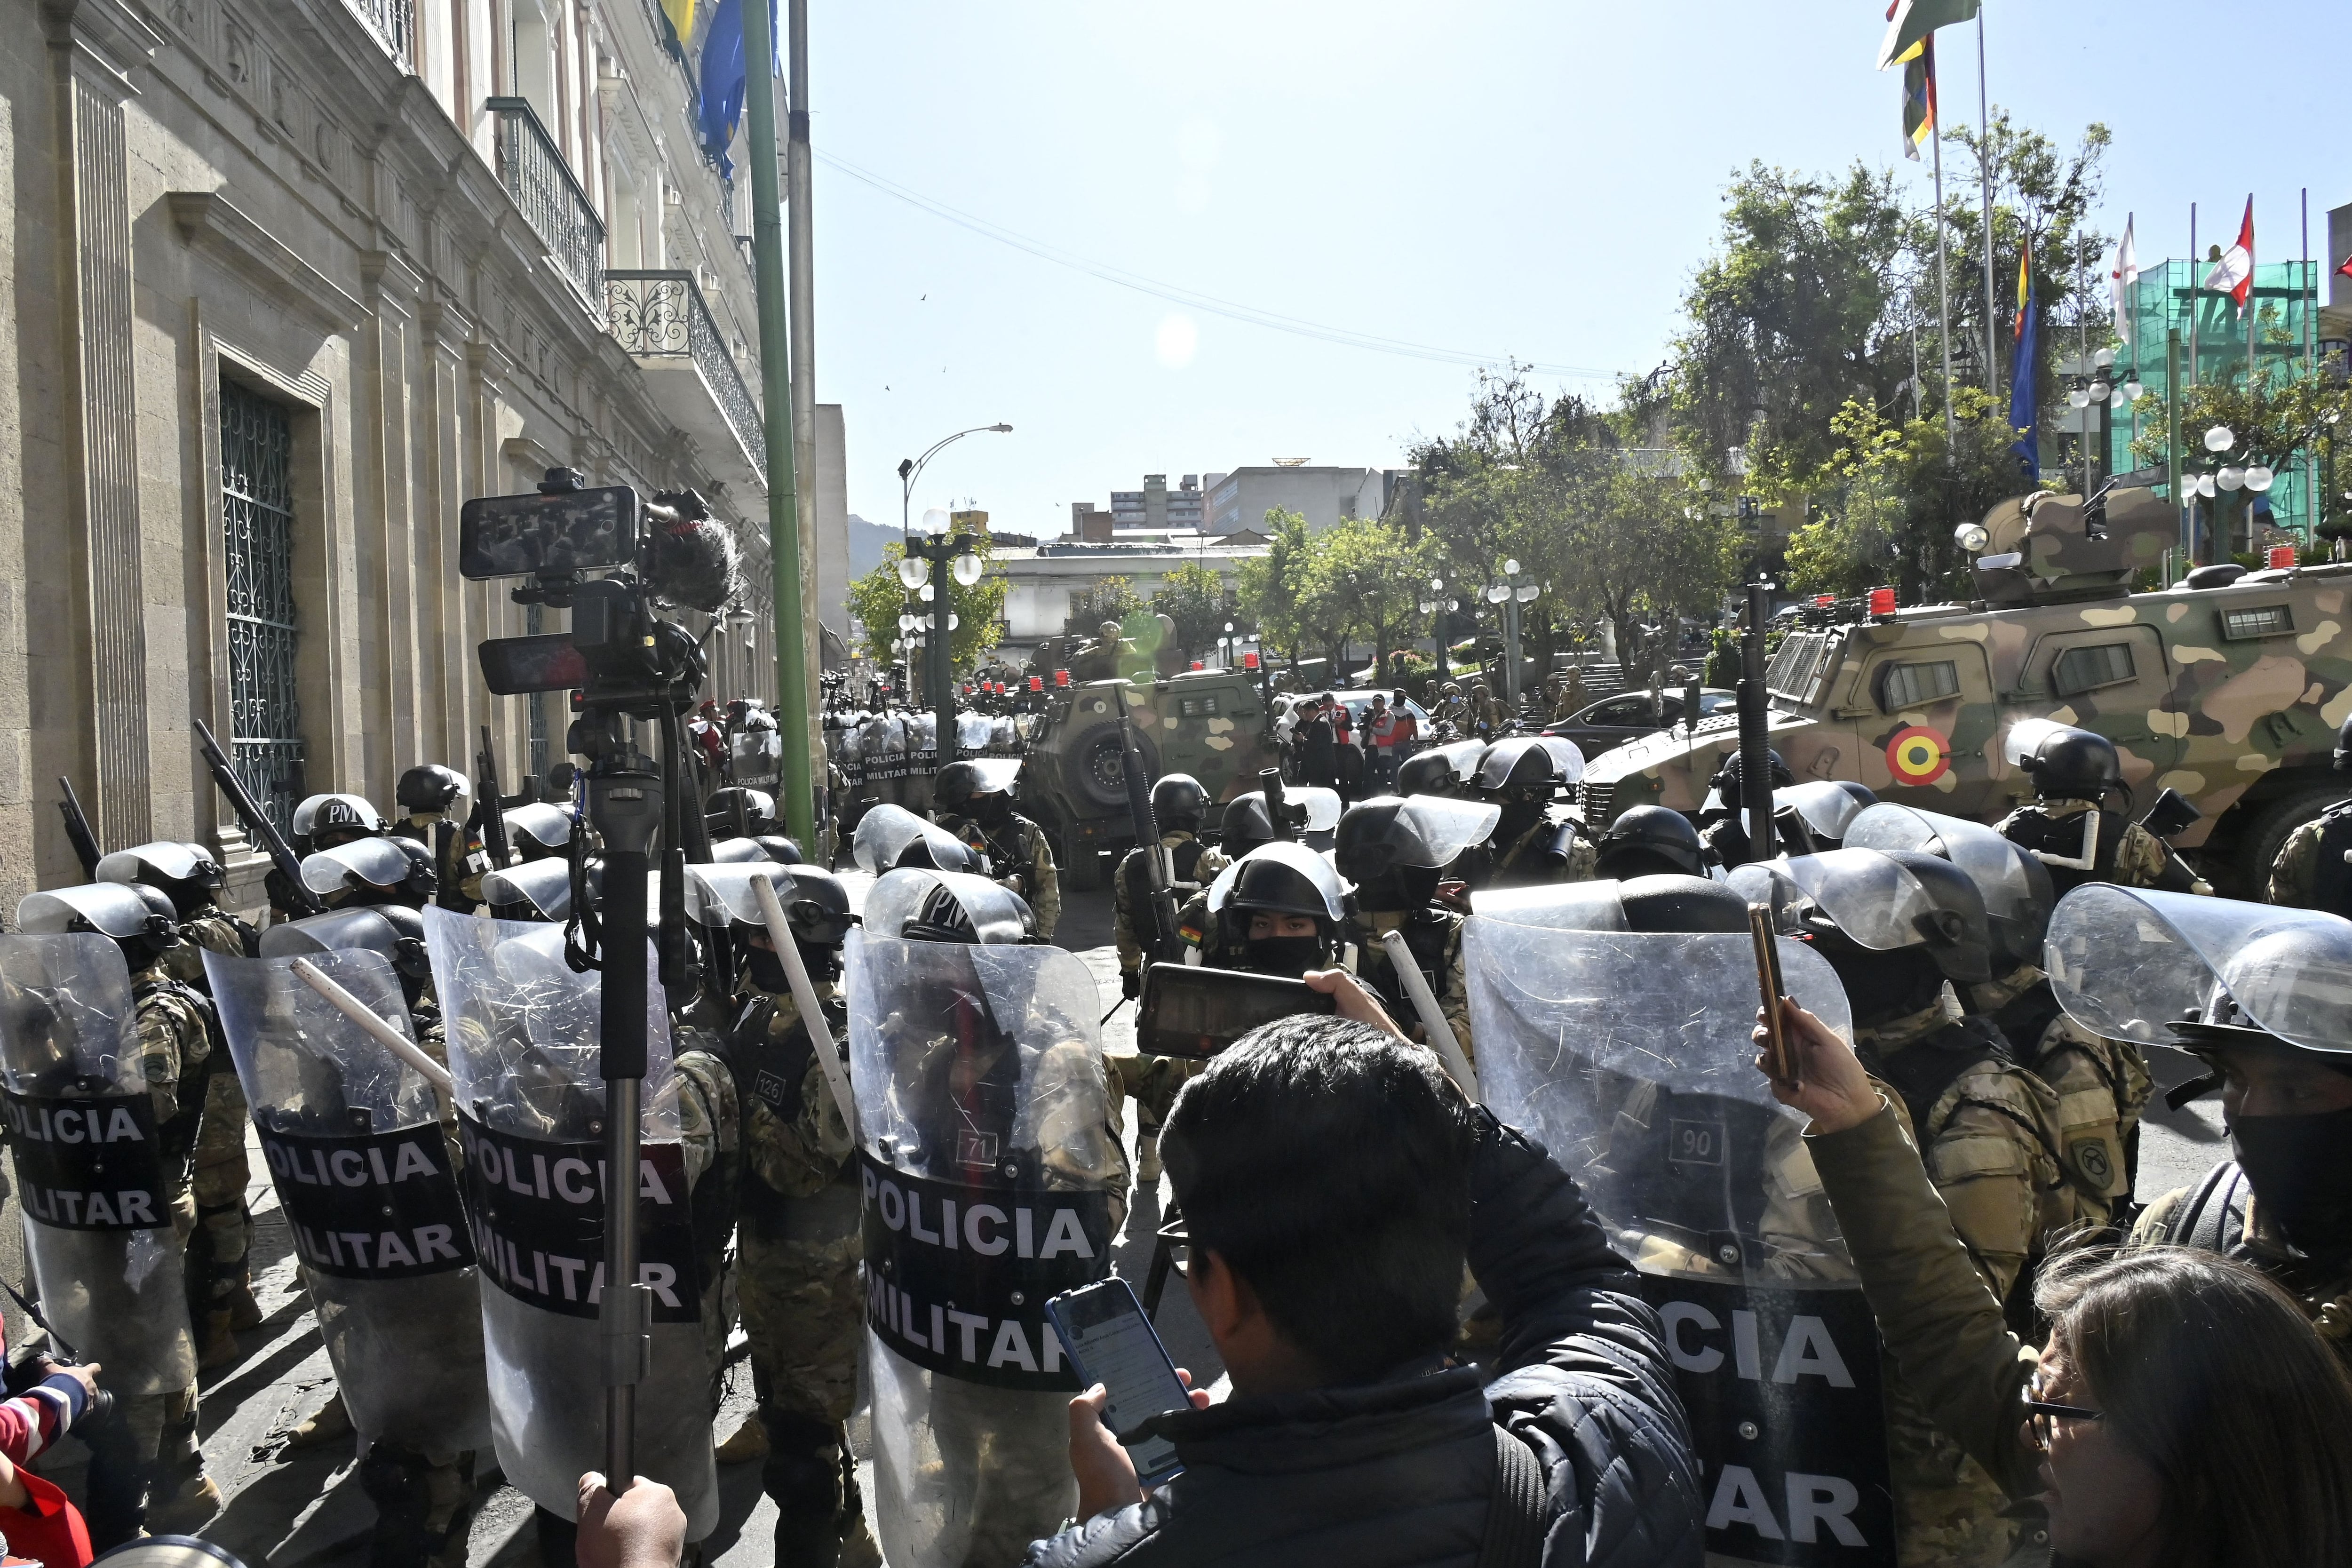 El presidente boliviano, Luis Arce, denunció este miércoles la reunión no autorizada de soldados y tanques frente a edificios gubernamentales en la capital, La Paz, diciendo 'democracia hay que respetarlo'.